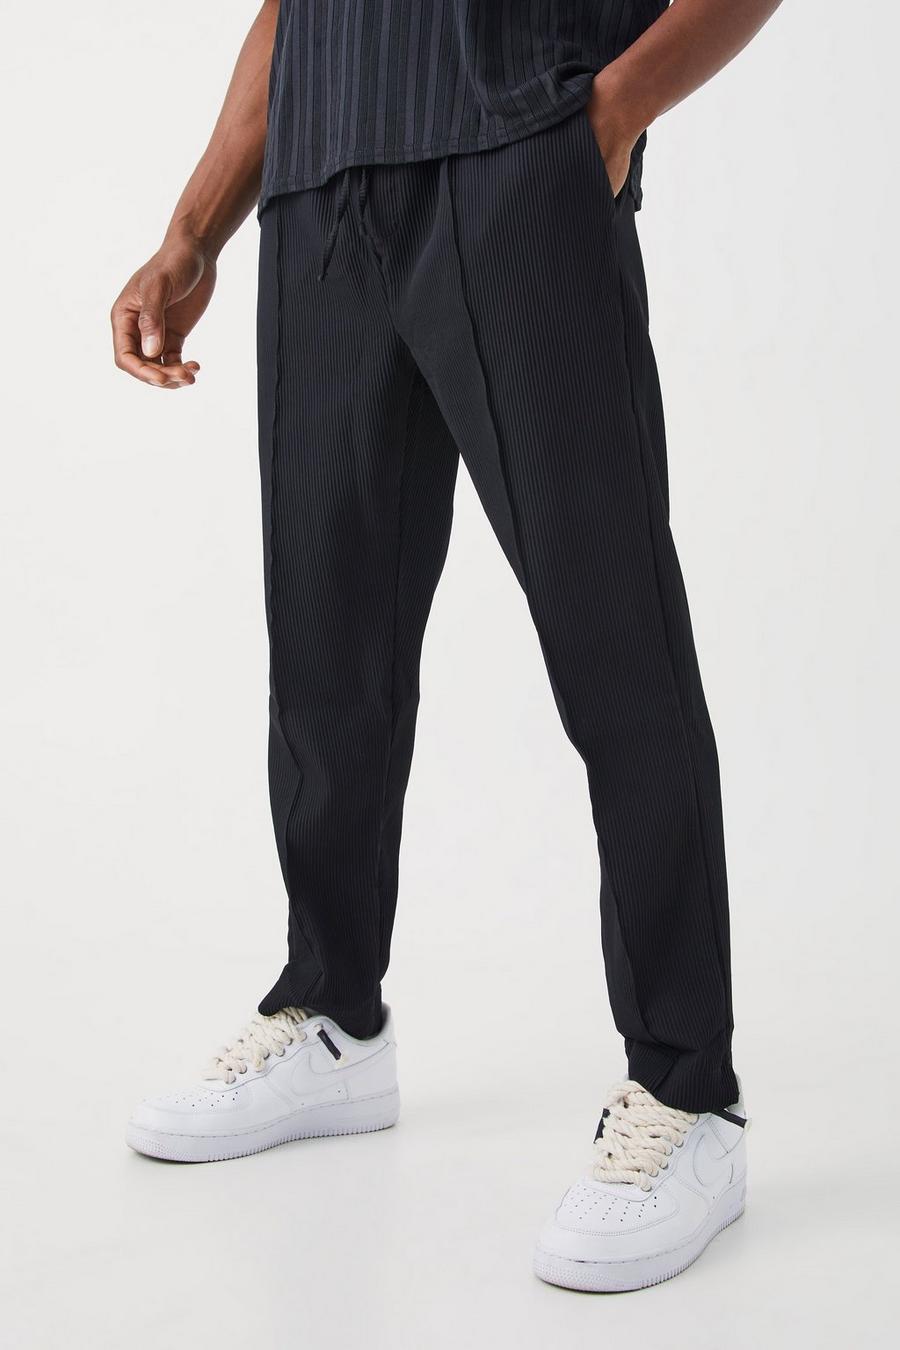 Pantalón plisado ajustado con cintura elástica, Black nero